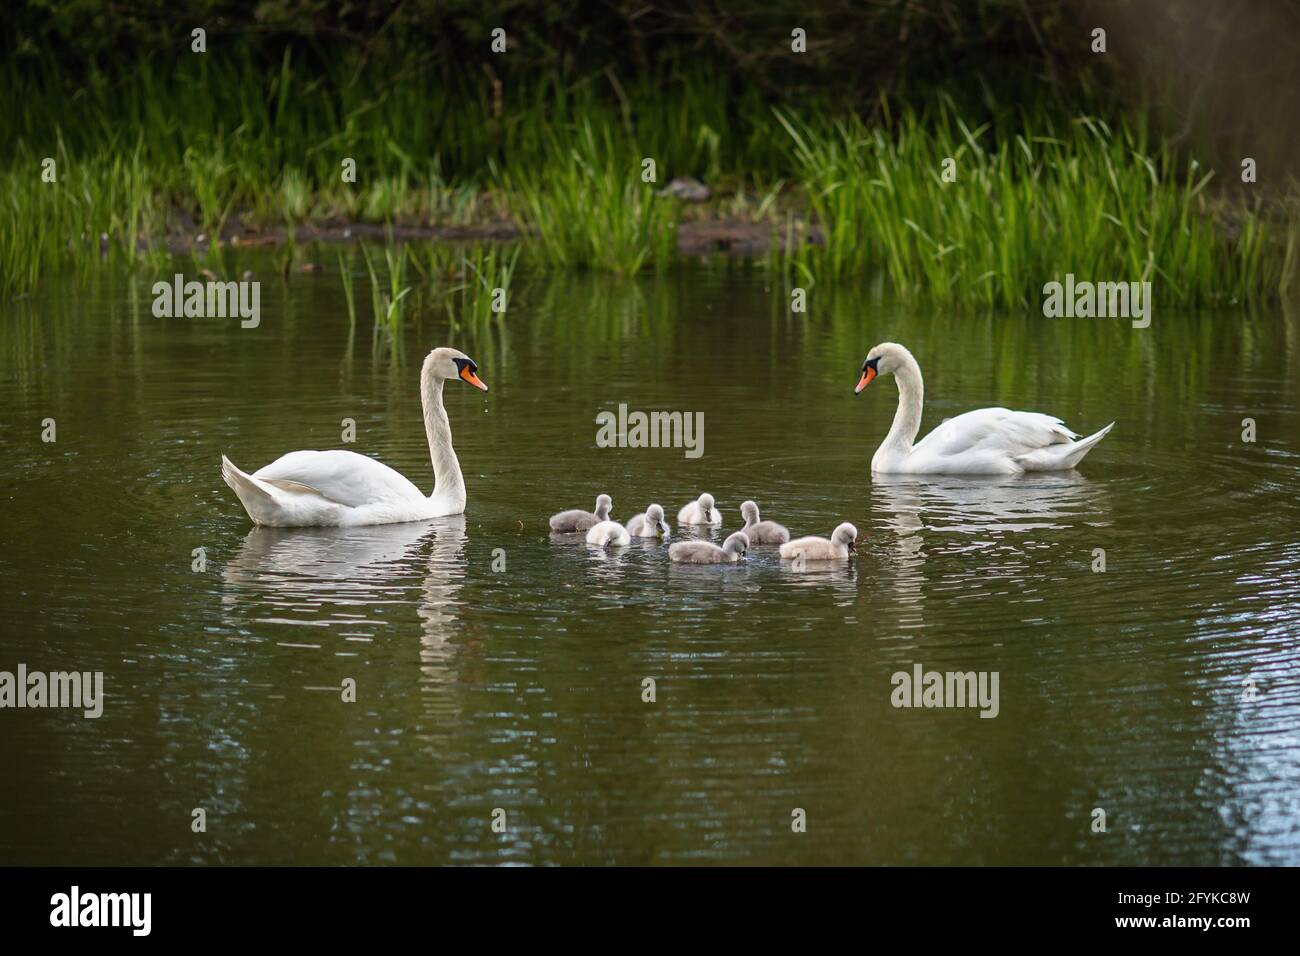 Famiglia wan muto bianco selvaggio con sette piccole prole carine che nuotano nel lago verde. Foto Stock